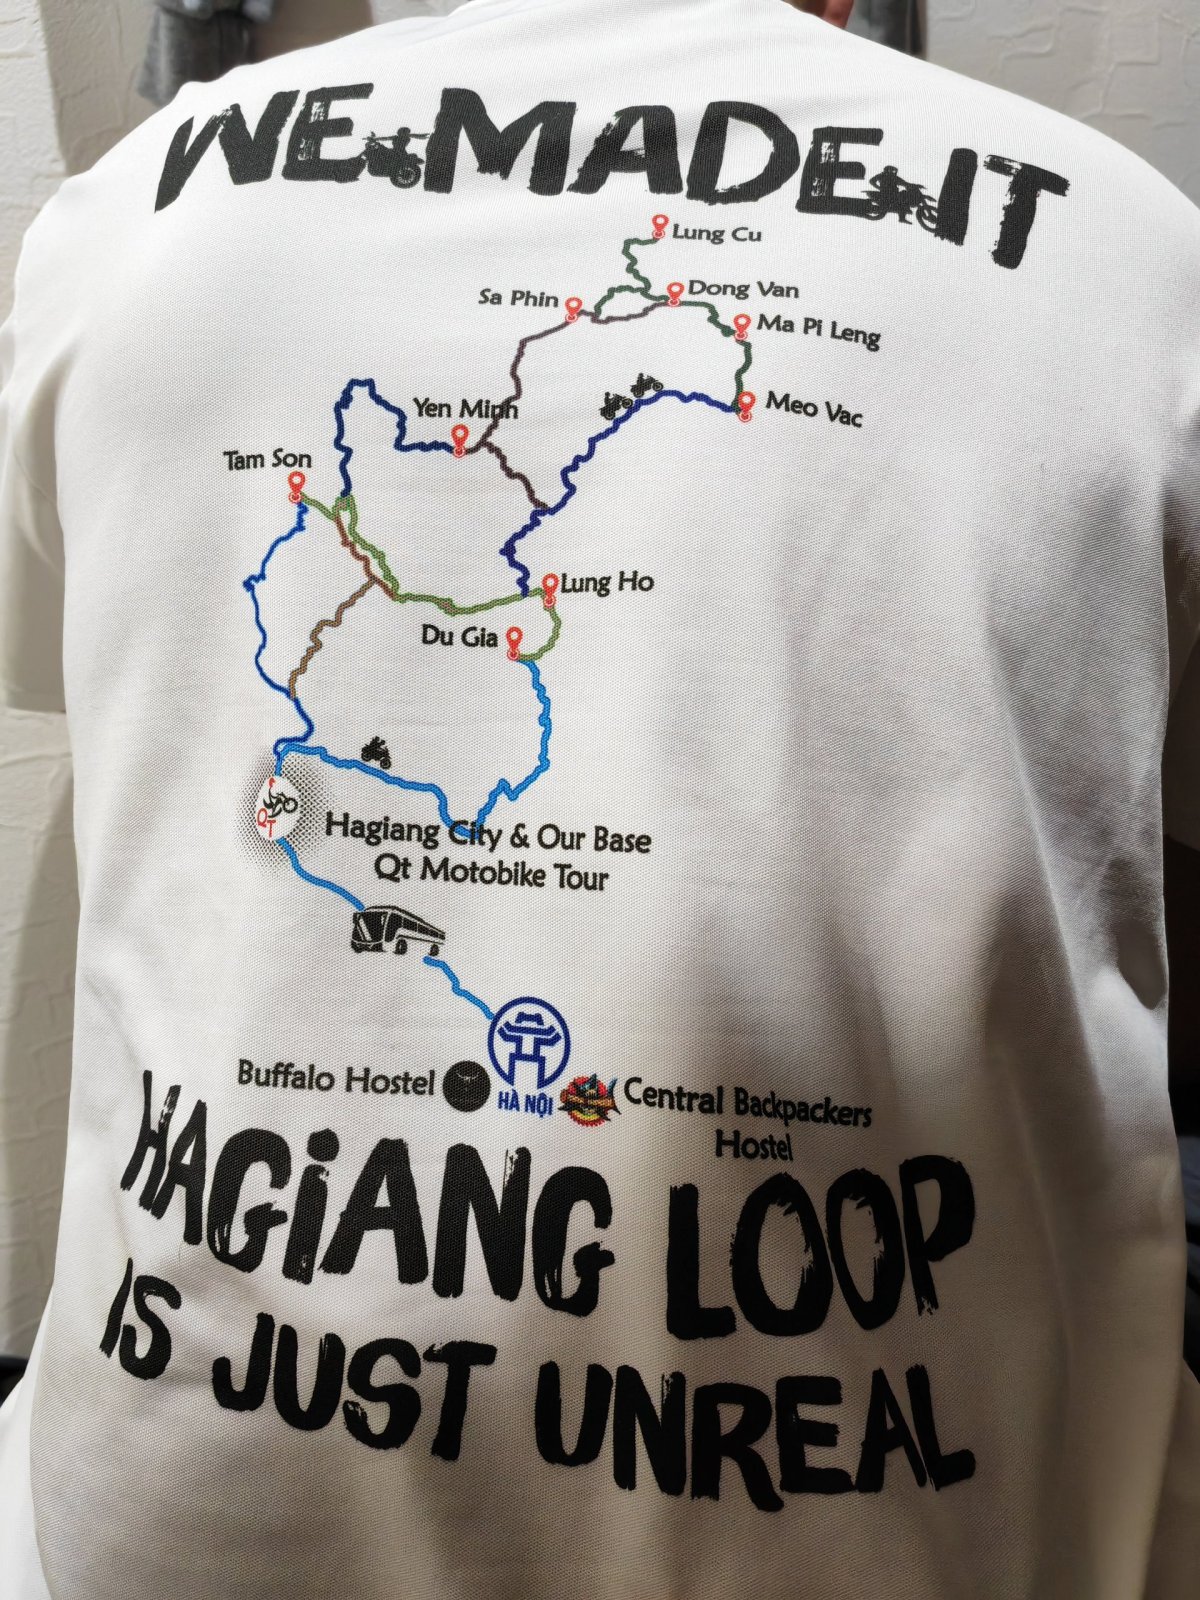 Památné tričko se znázorněnou trasou loopu (okruhu)